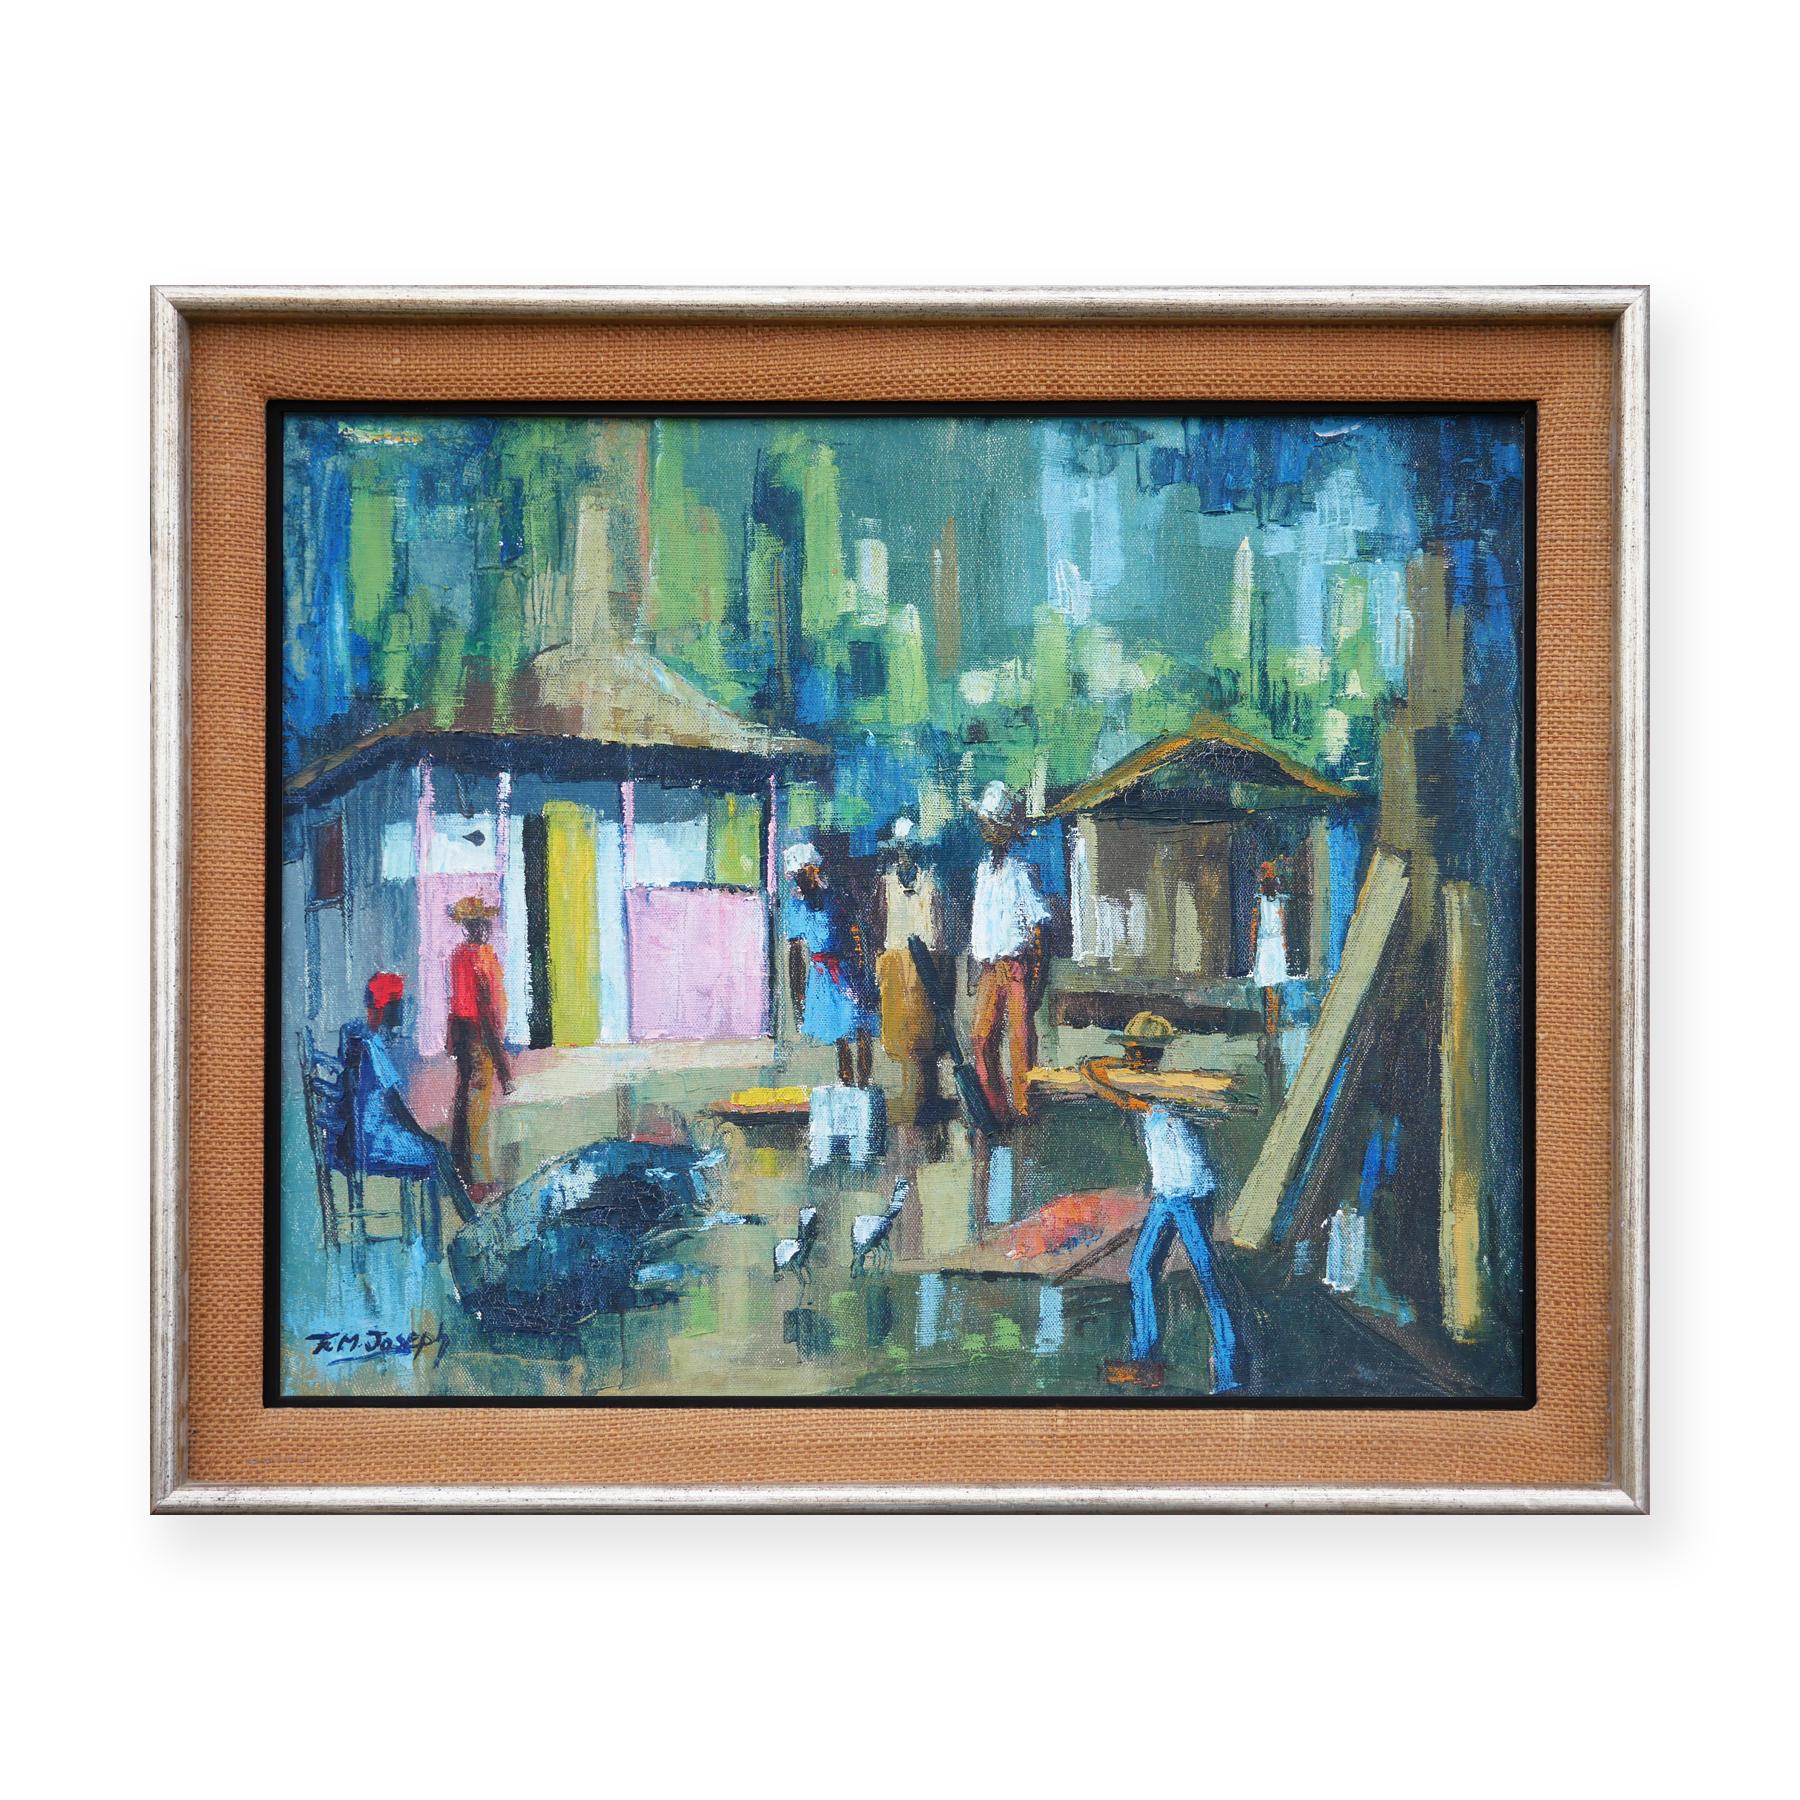 Scène de paysage de village abstrait bleu et vert d'inspiration post-impressionniste - Painting de Franklin M. Joseph